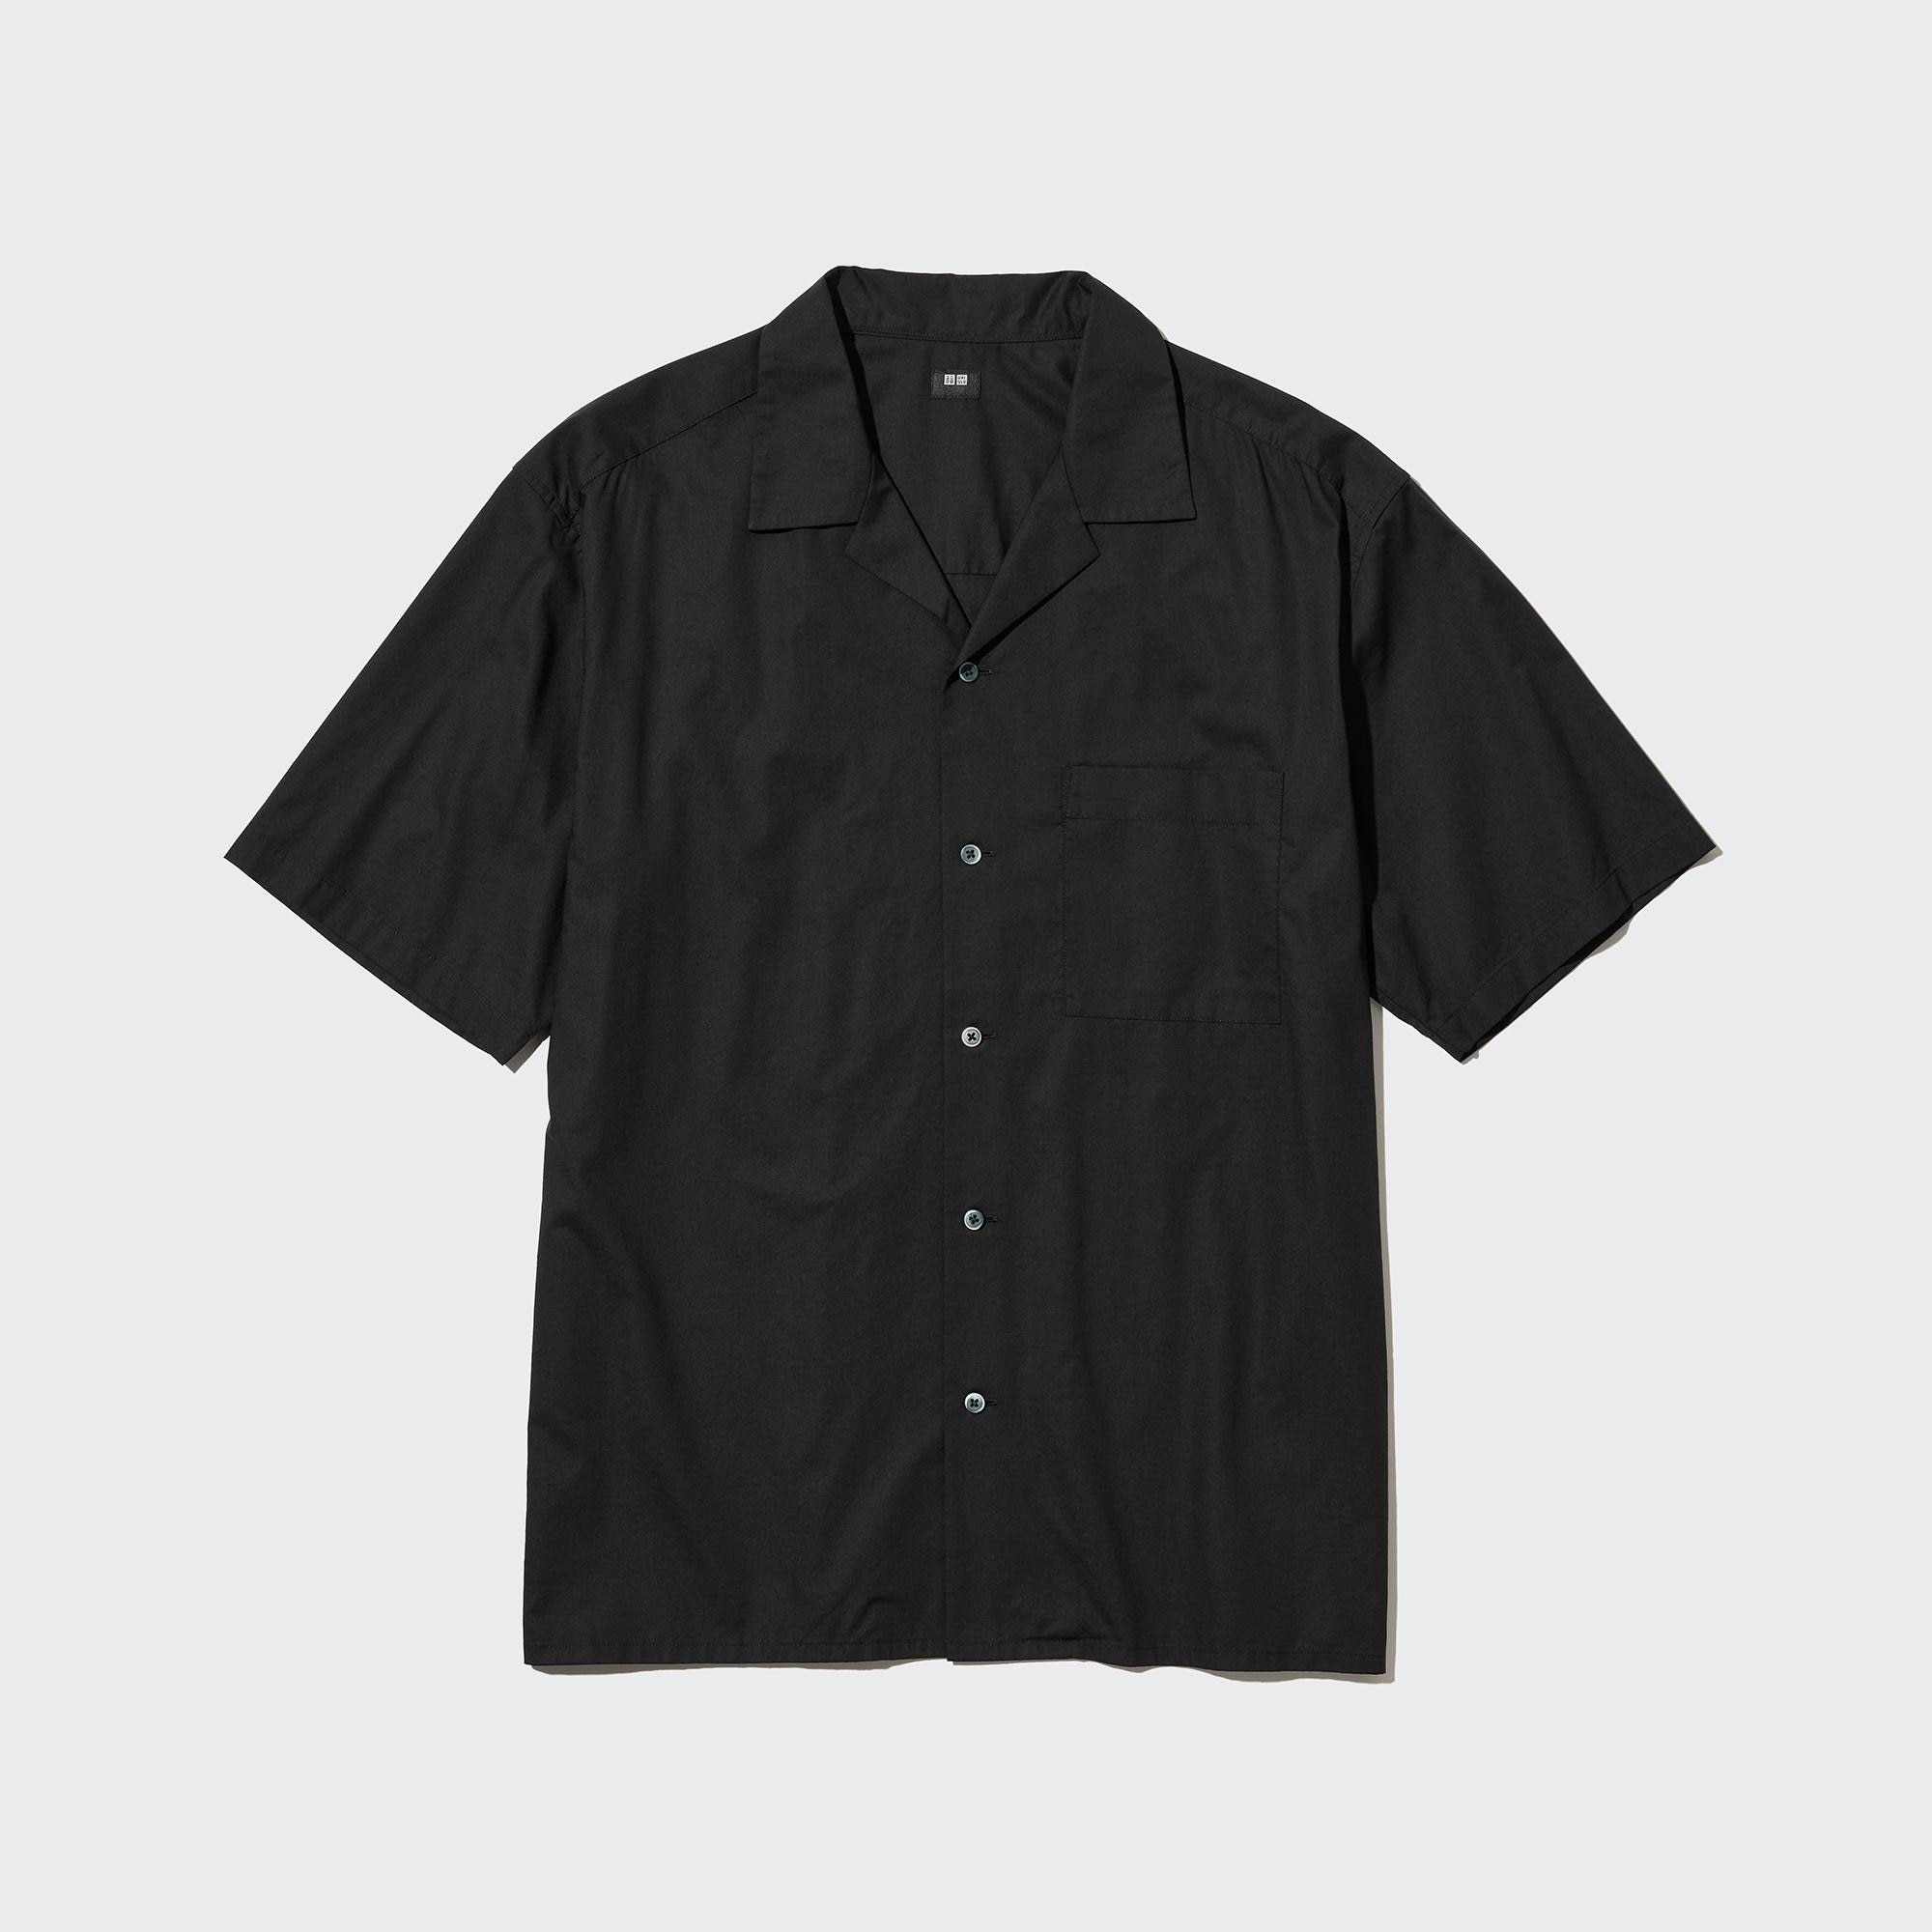 Jun - Open Collar Short-Sleeve Shirt Outfit | StyleHint